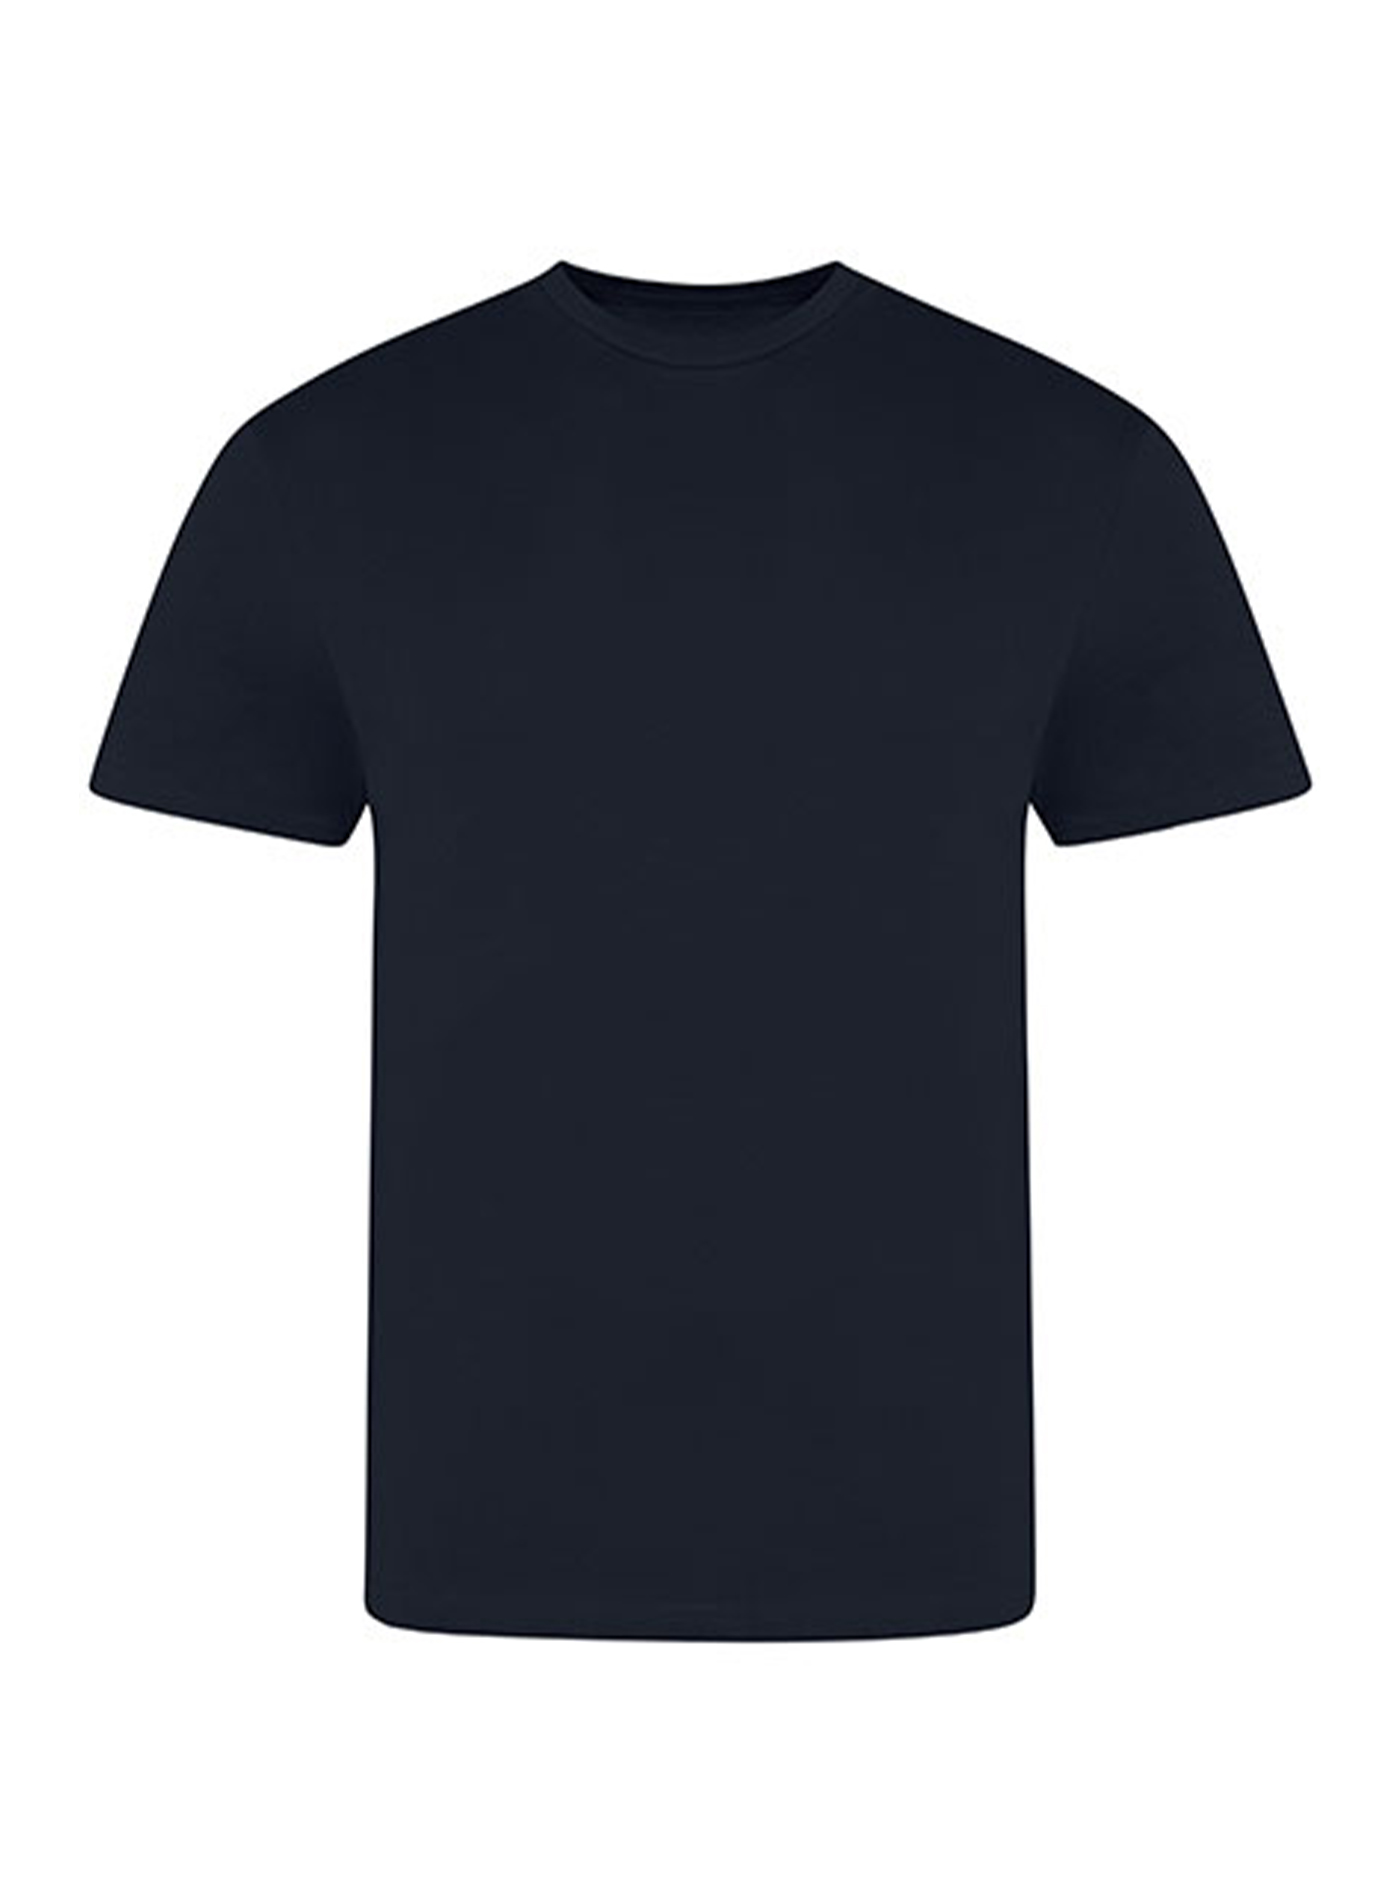 Pánské tričko Just Ts - Námořní modrá XL